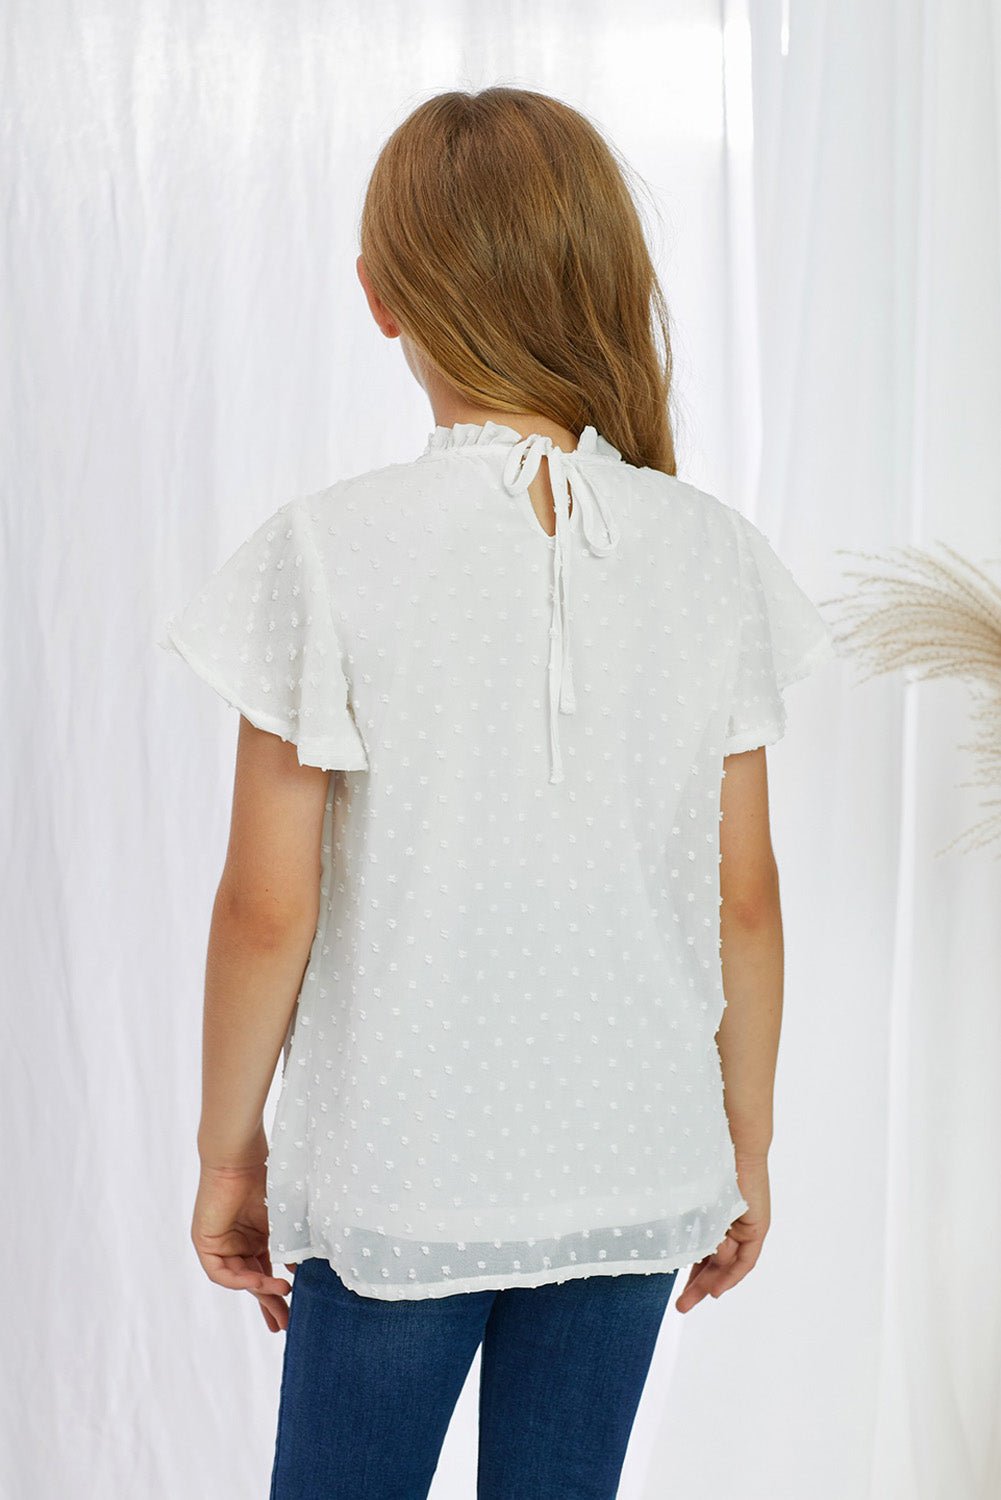 Girls Swiss Dot Smocked Flutter Sleeve Blouse - Fashion Girl Online Store